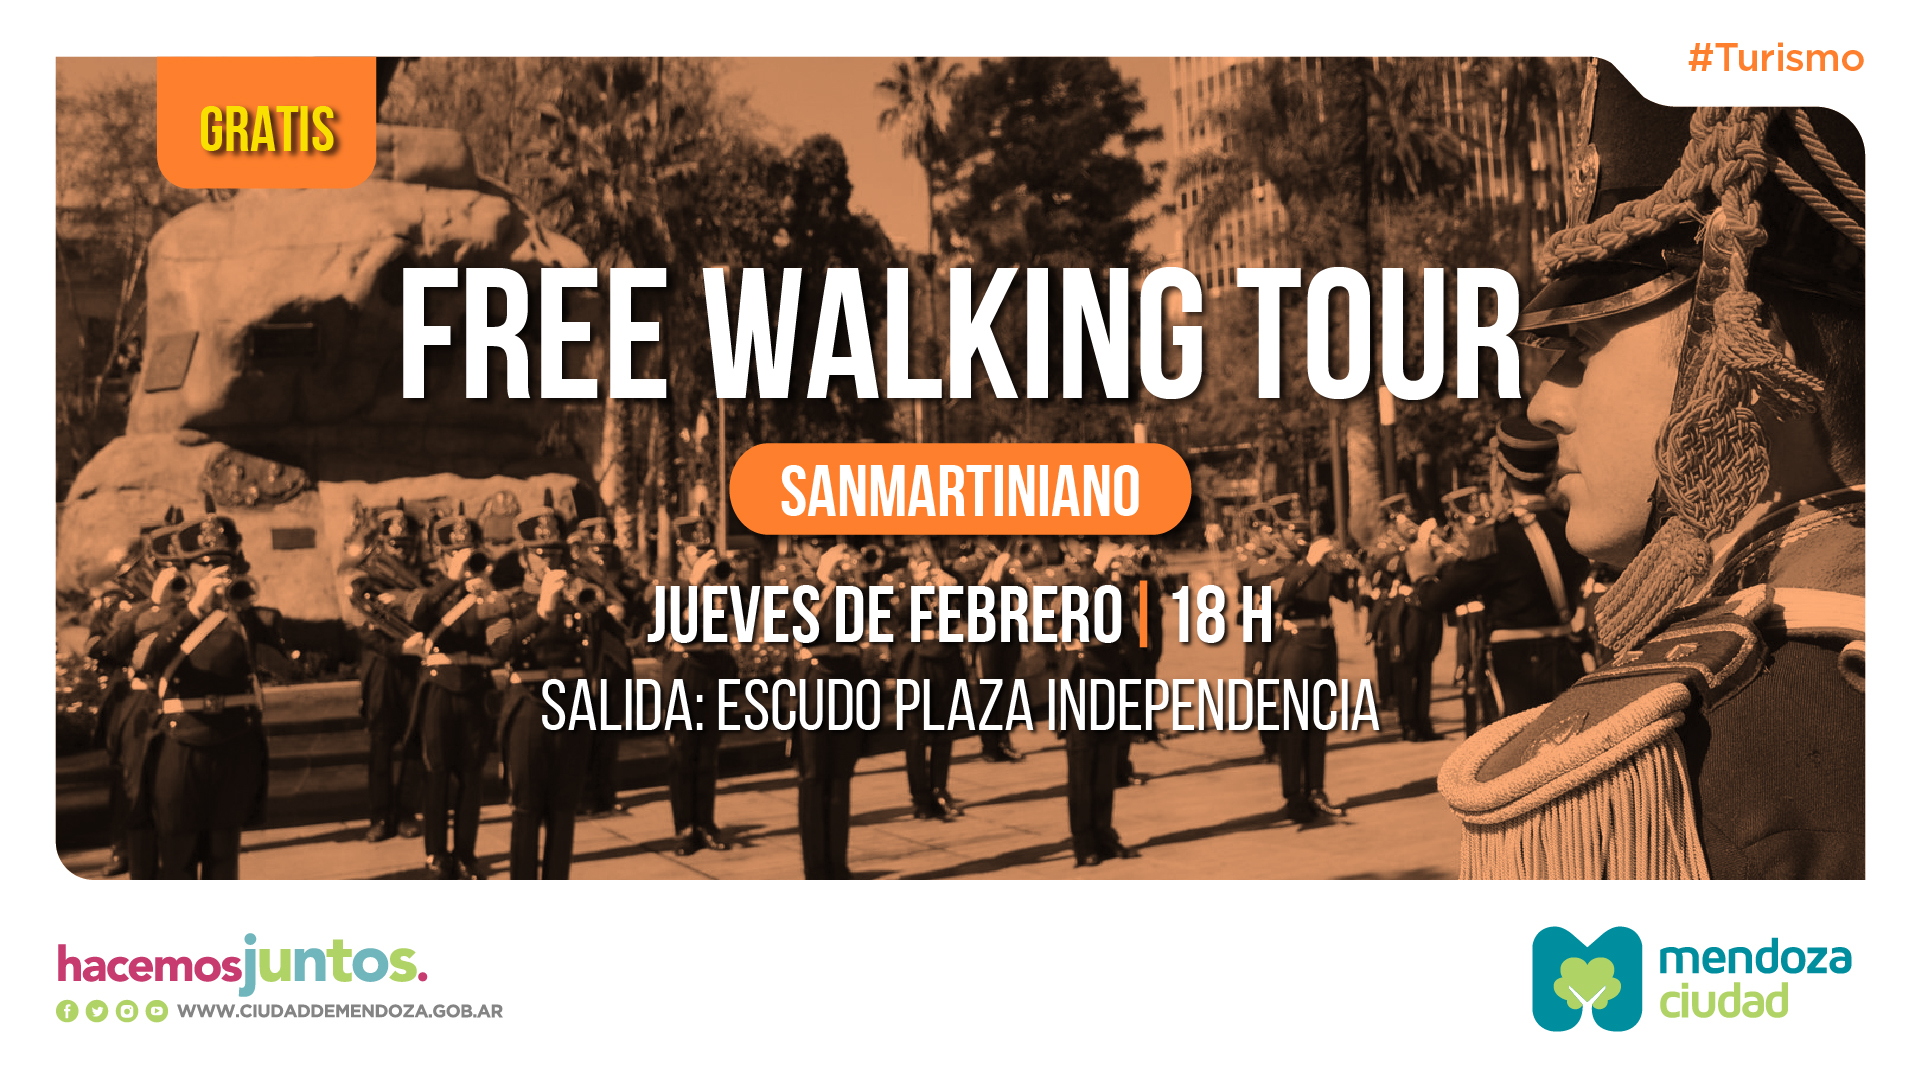 FREE WALKING TOUR TT